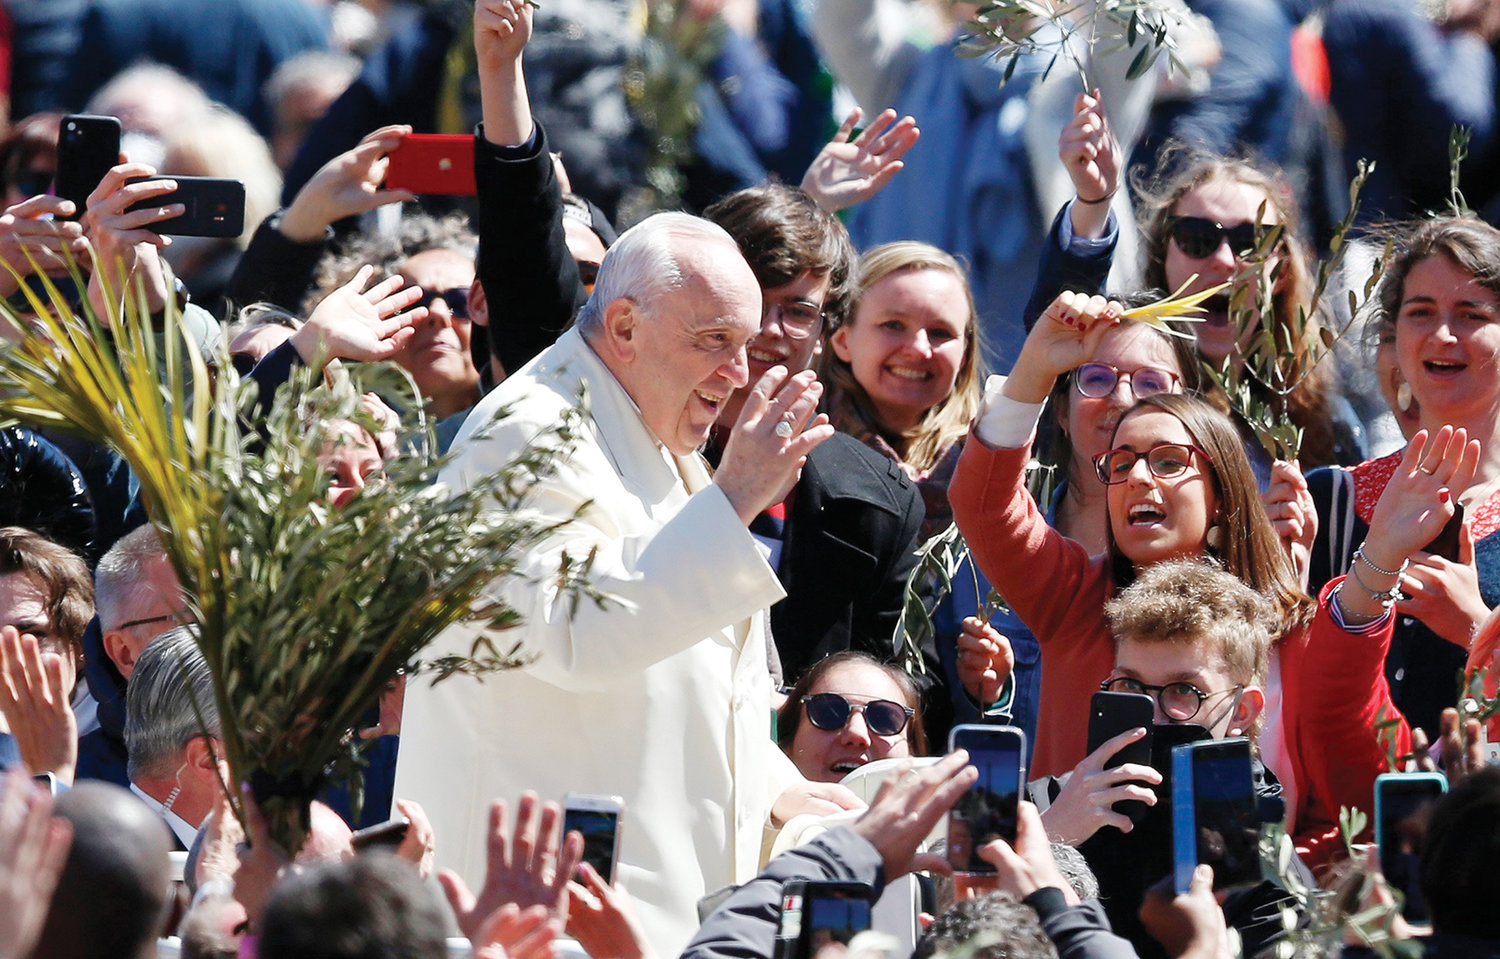 DOMINGO DE RAMOS—El Papa Francisco saluda a la multitud después de celebrar la Misa del Domingo de Ramos en la Plaza de San Pedro el 10 de abril.